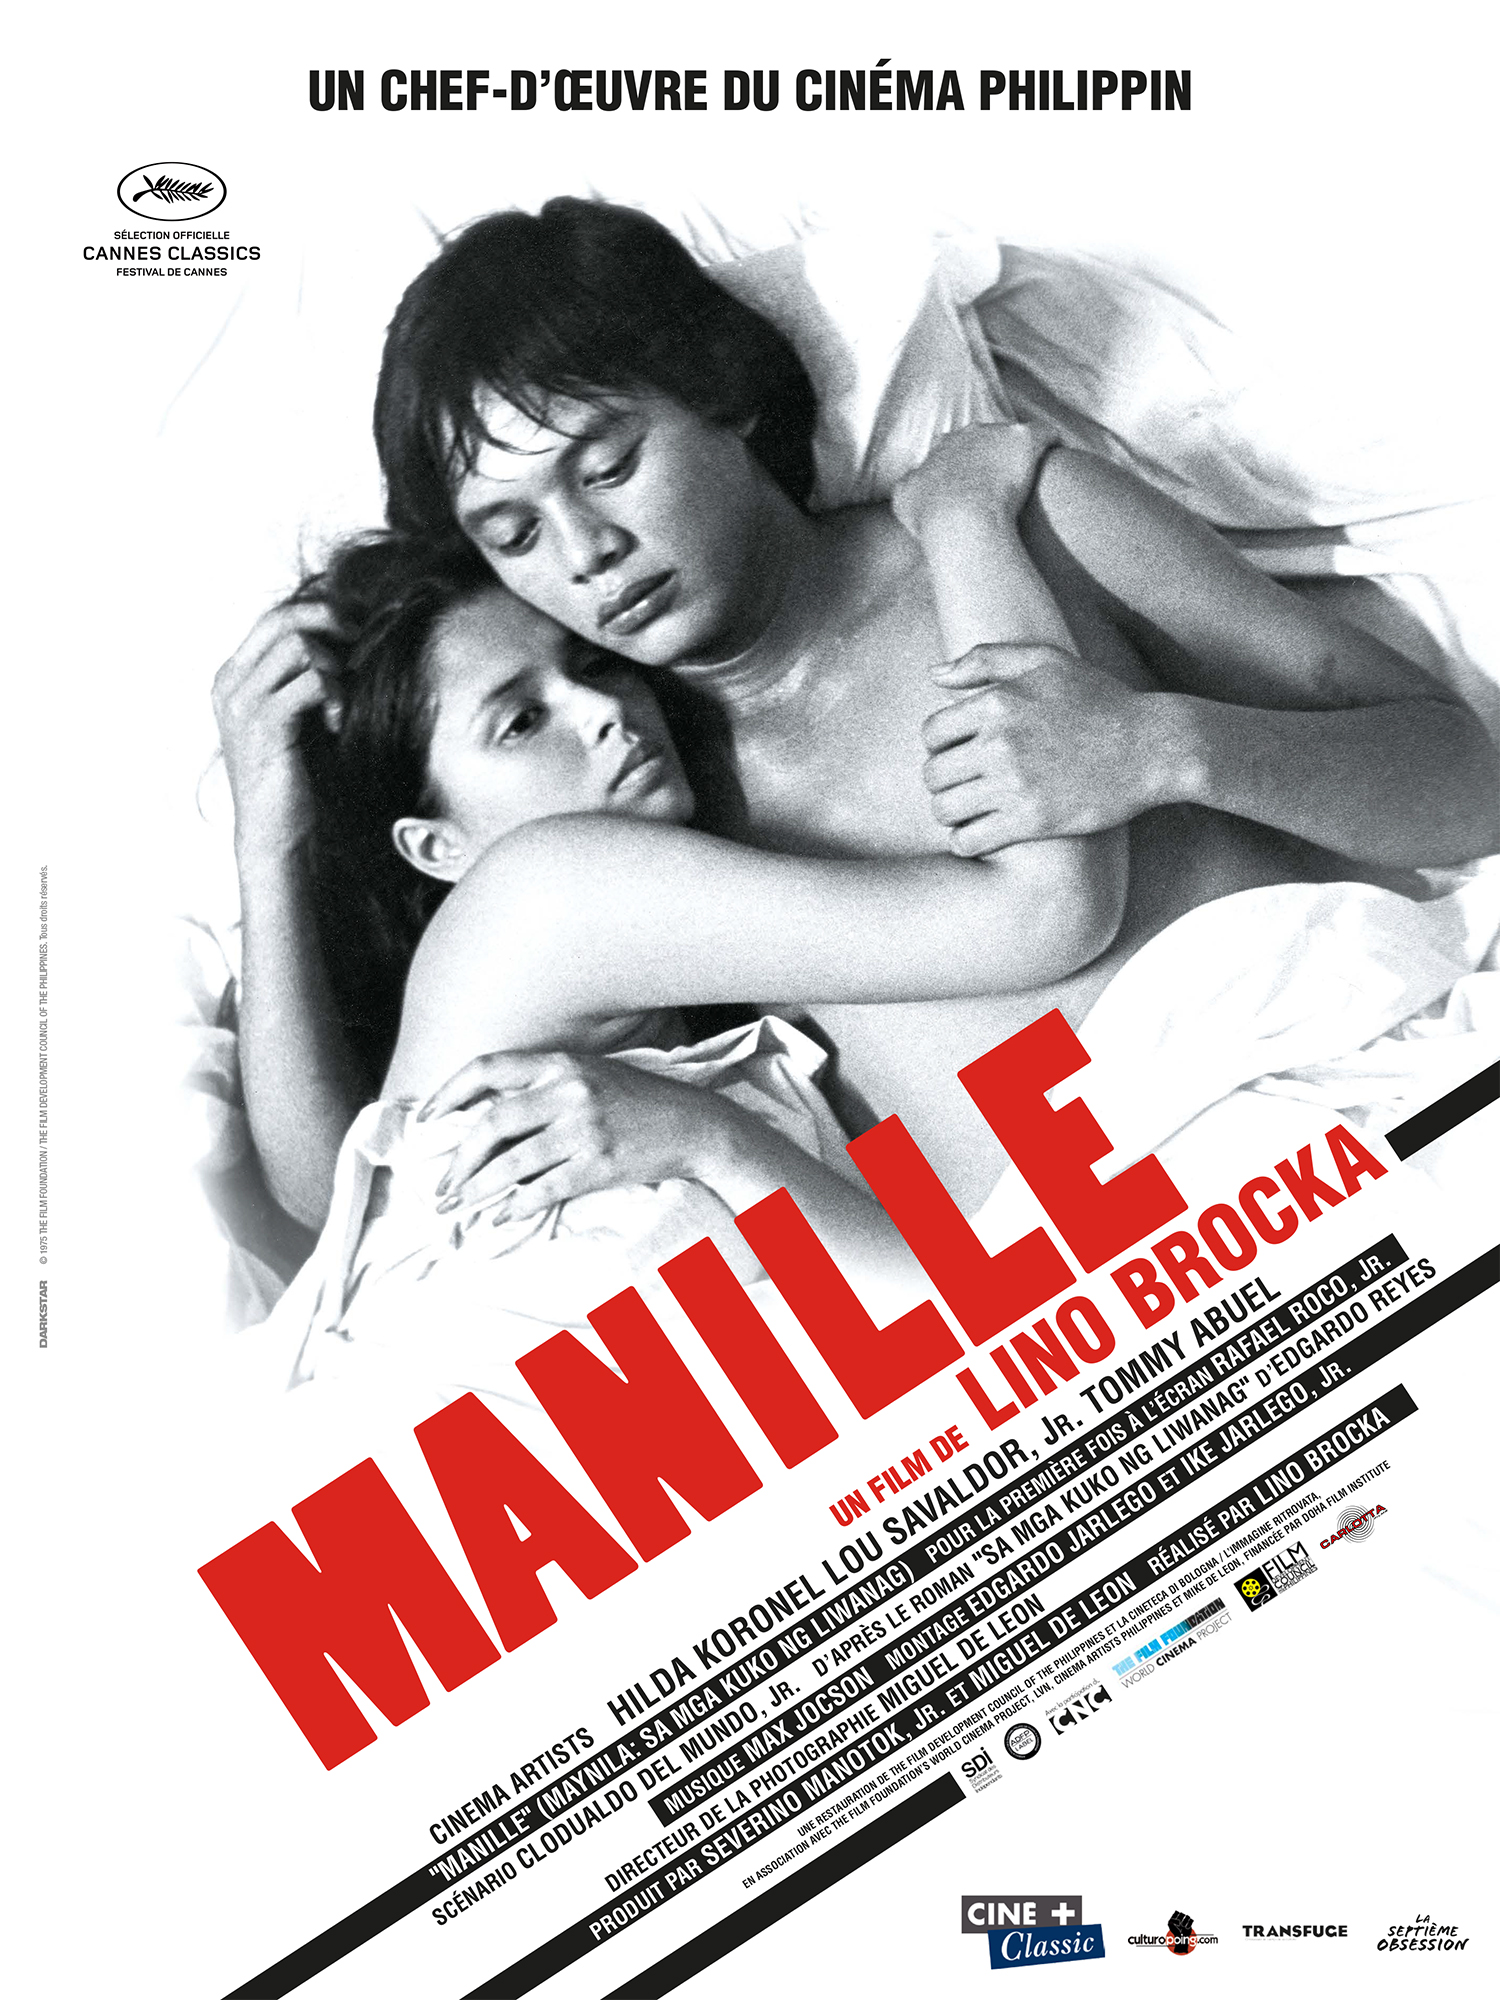 Manille, réalisé en 1975 par le cinéaste philippin Lino Brocka, ressort en salles en version restaurée.